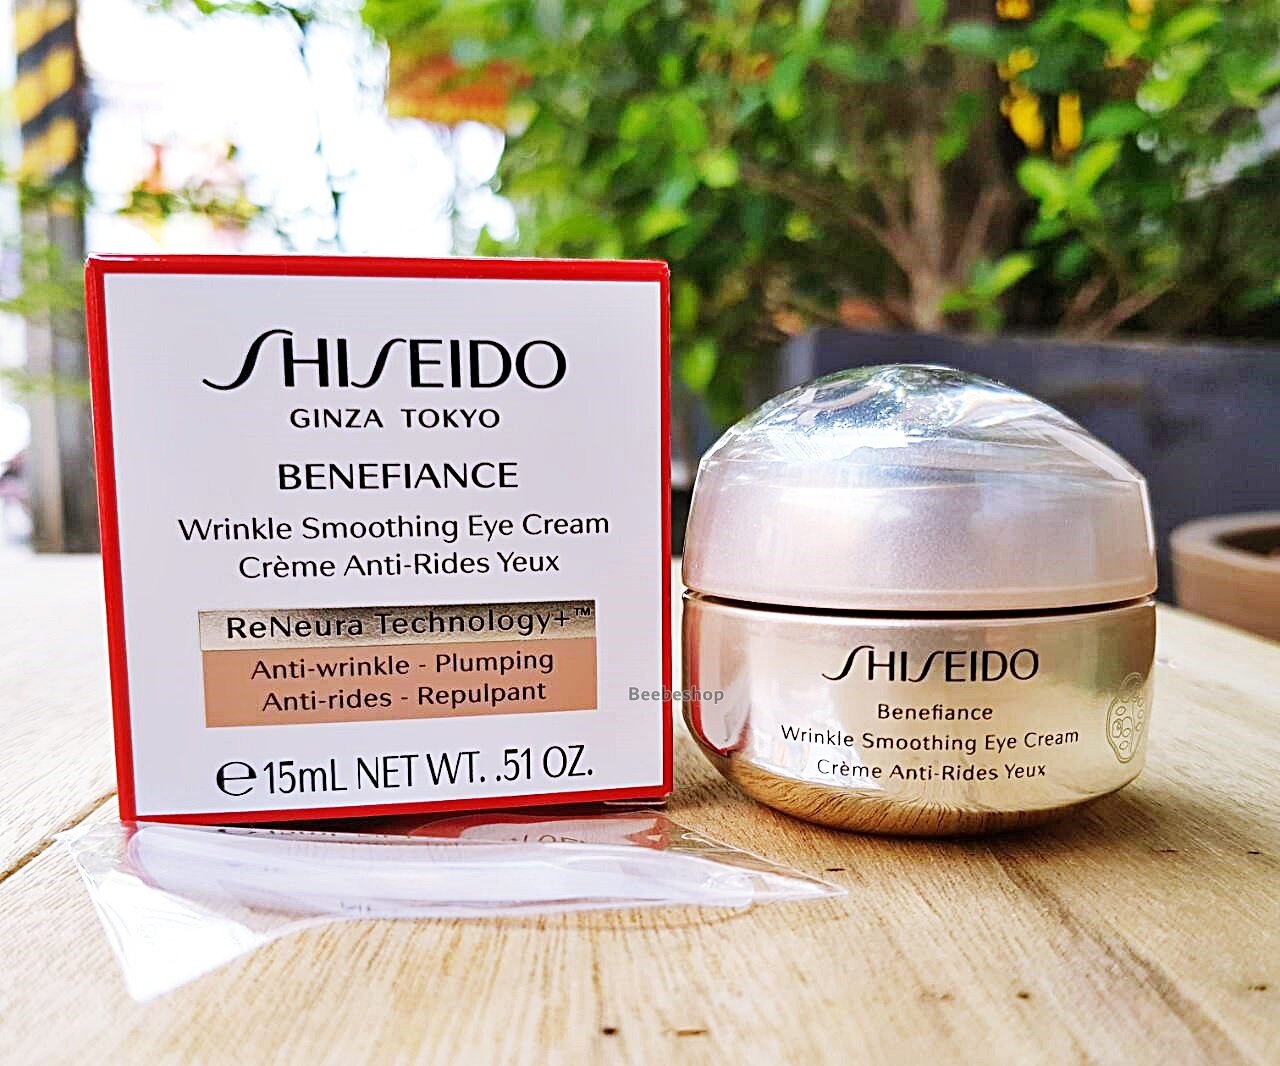 Shiseido benefiance wrinkle. Shiseido Benefiance Eye Cream. Shiseido Wrinkle Smoothing Cream. Shiseido Benefiance Wrinkle Smoothing Eye. Shiseido // крем Benefiance Wrinkle Smoothing Eye Cream 15ml.